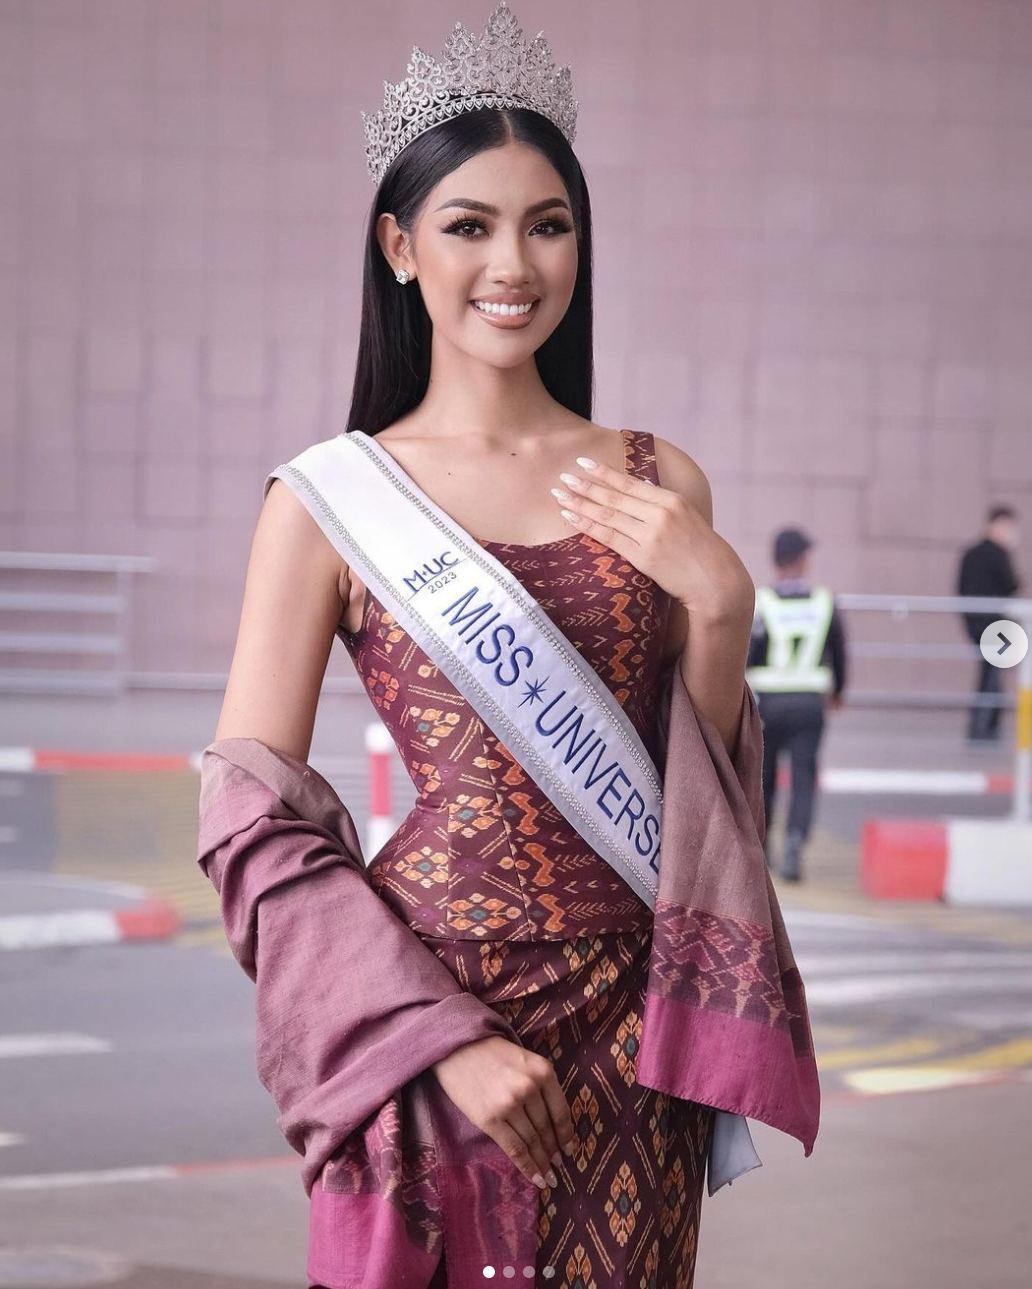 Mỹ nhân Campuchia cao gần 1,8m, mặt đẹp cực "Tây", nổi trội tại Miss Universe